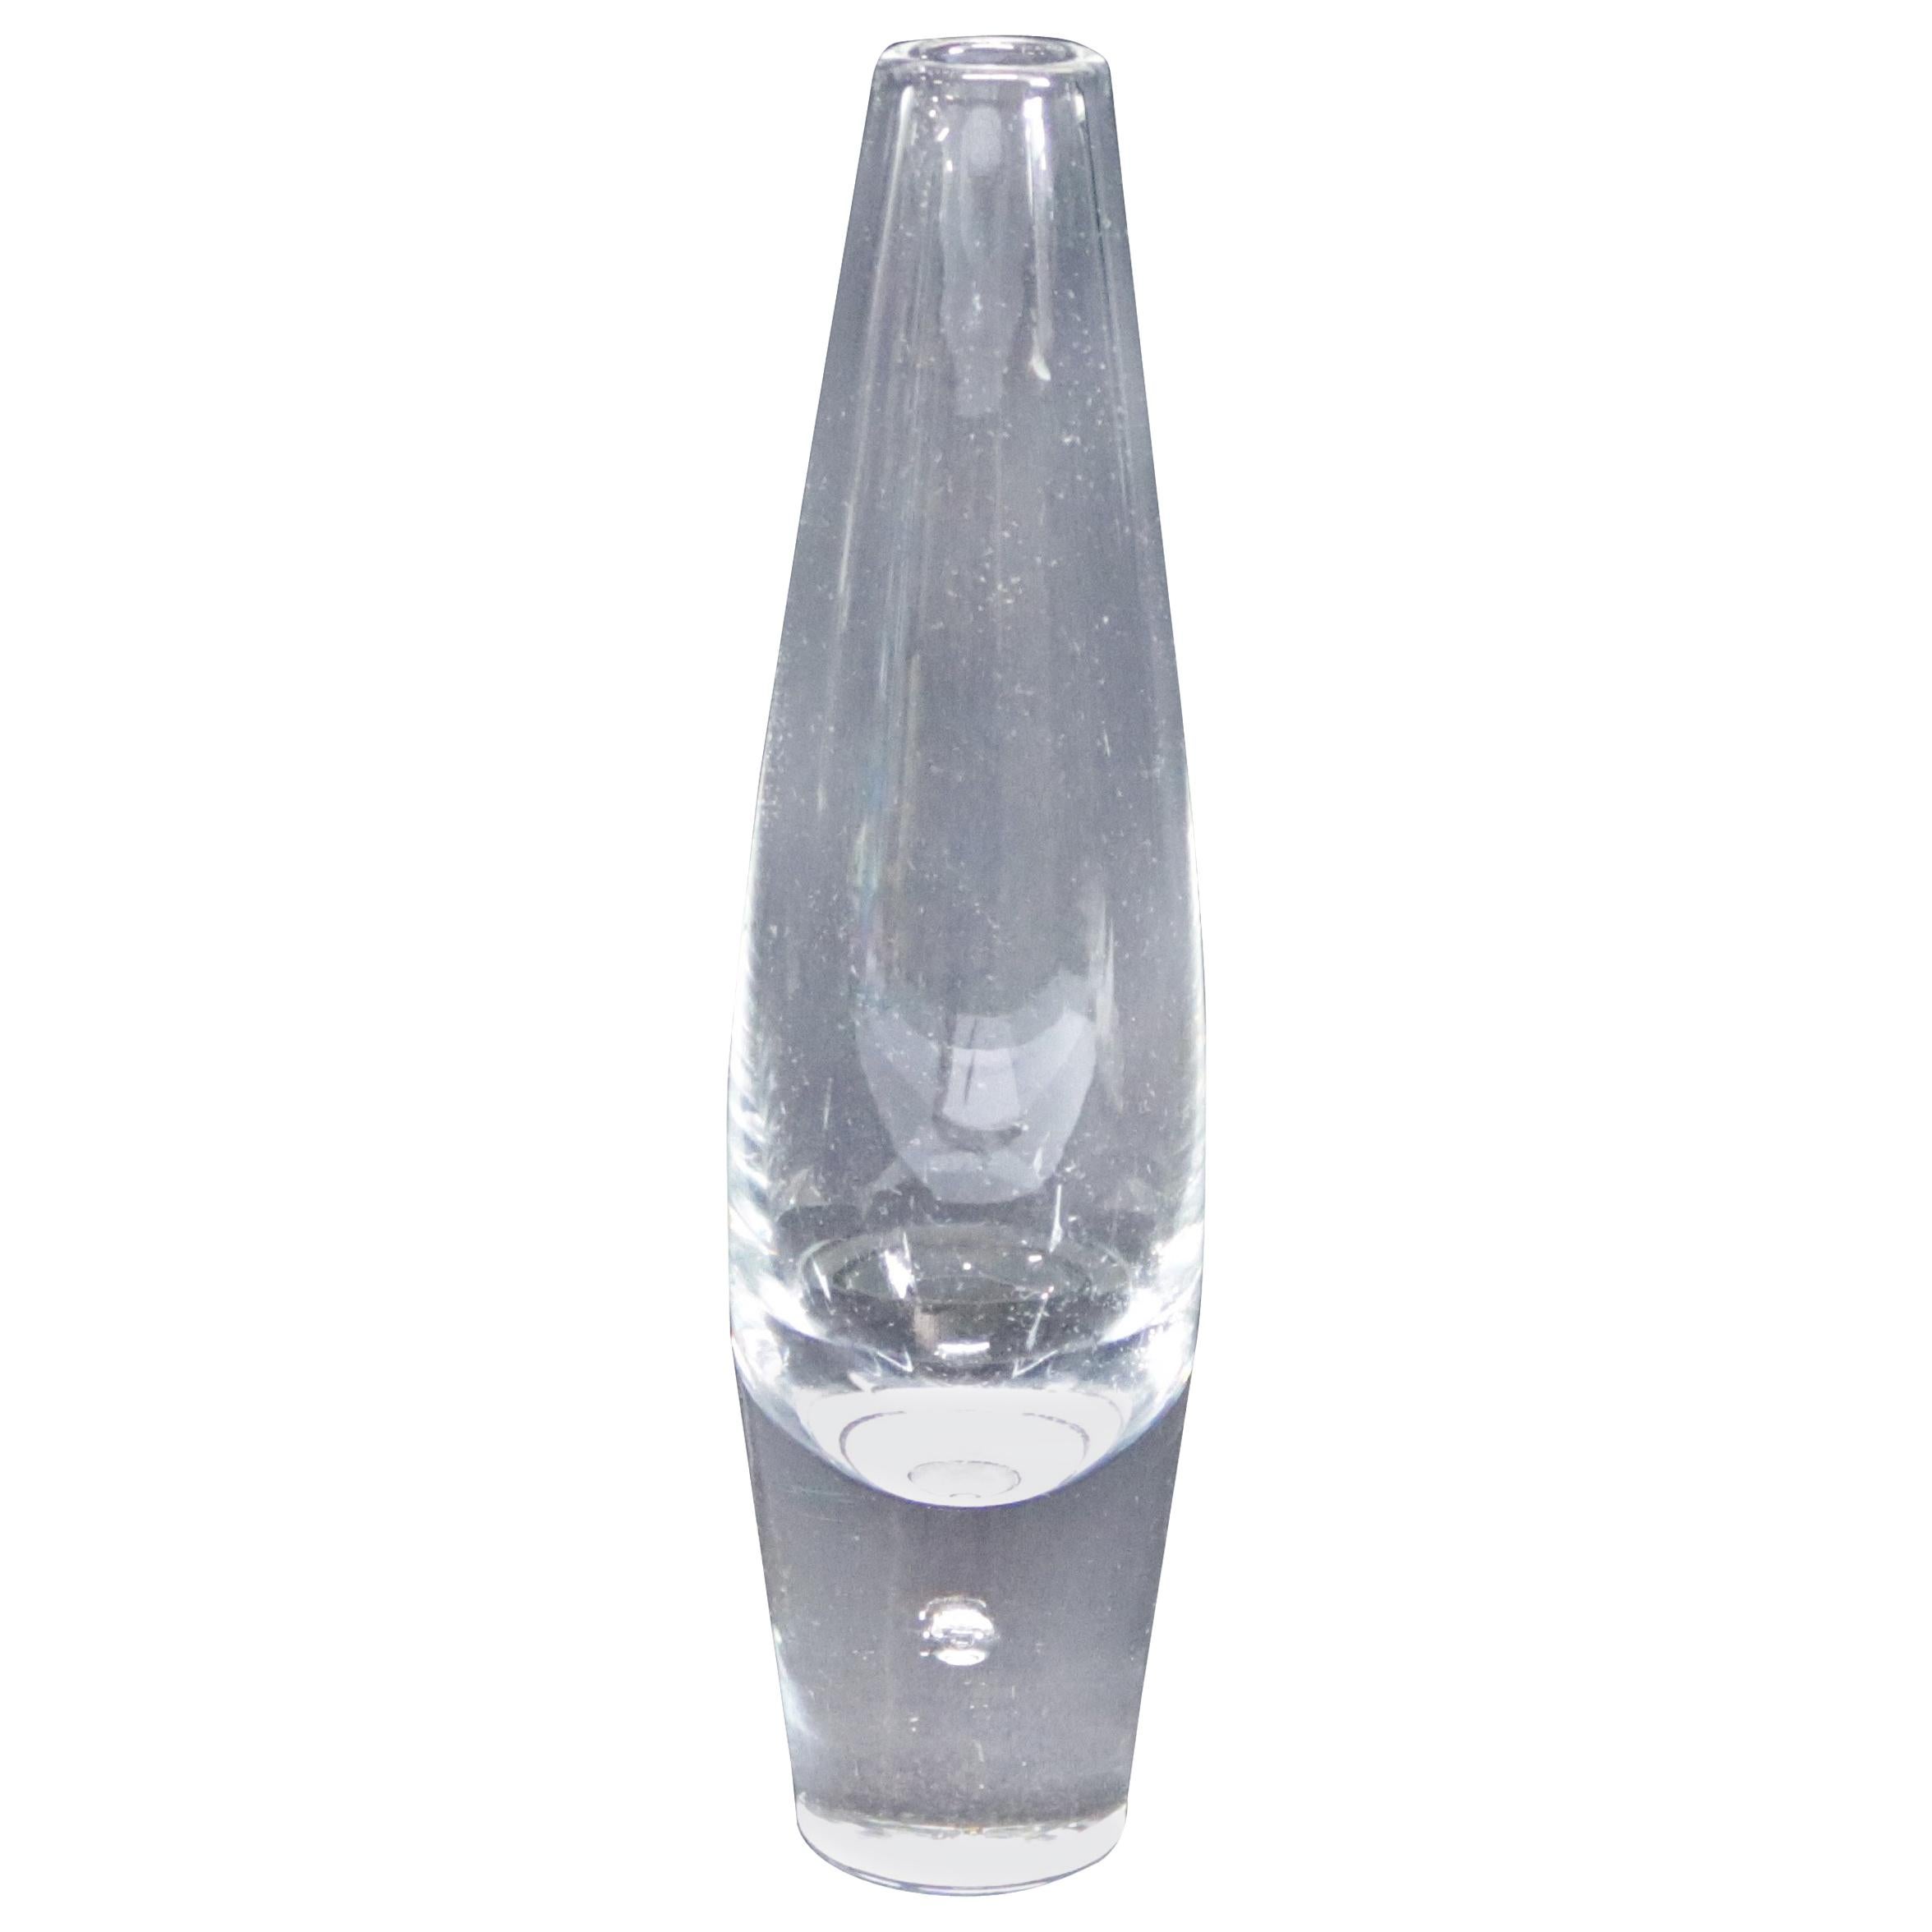 Steuben Signed Art Glass Modernist Teardrop Bud Vase by David Hills, Signed